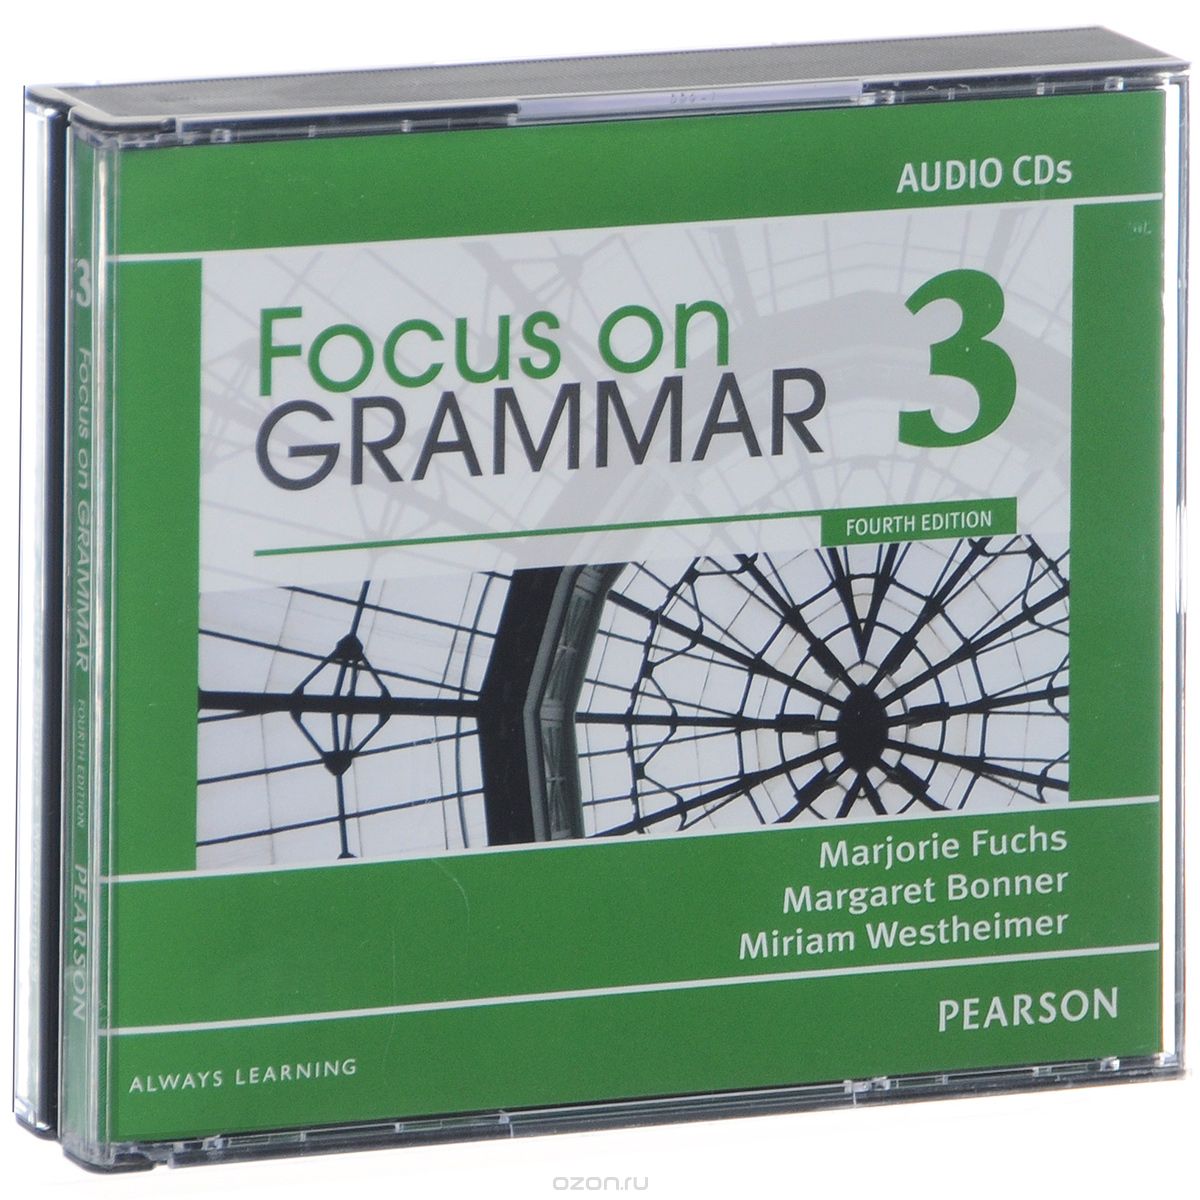 Скачать книгу "Focus on Grammar 3: Audio CDs (аудиокурс на 3 CD)"